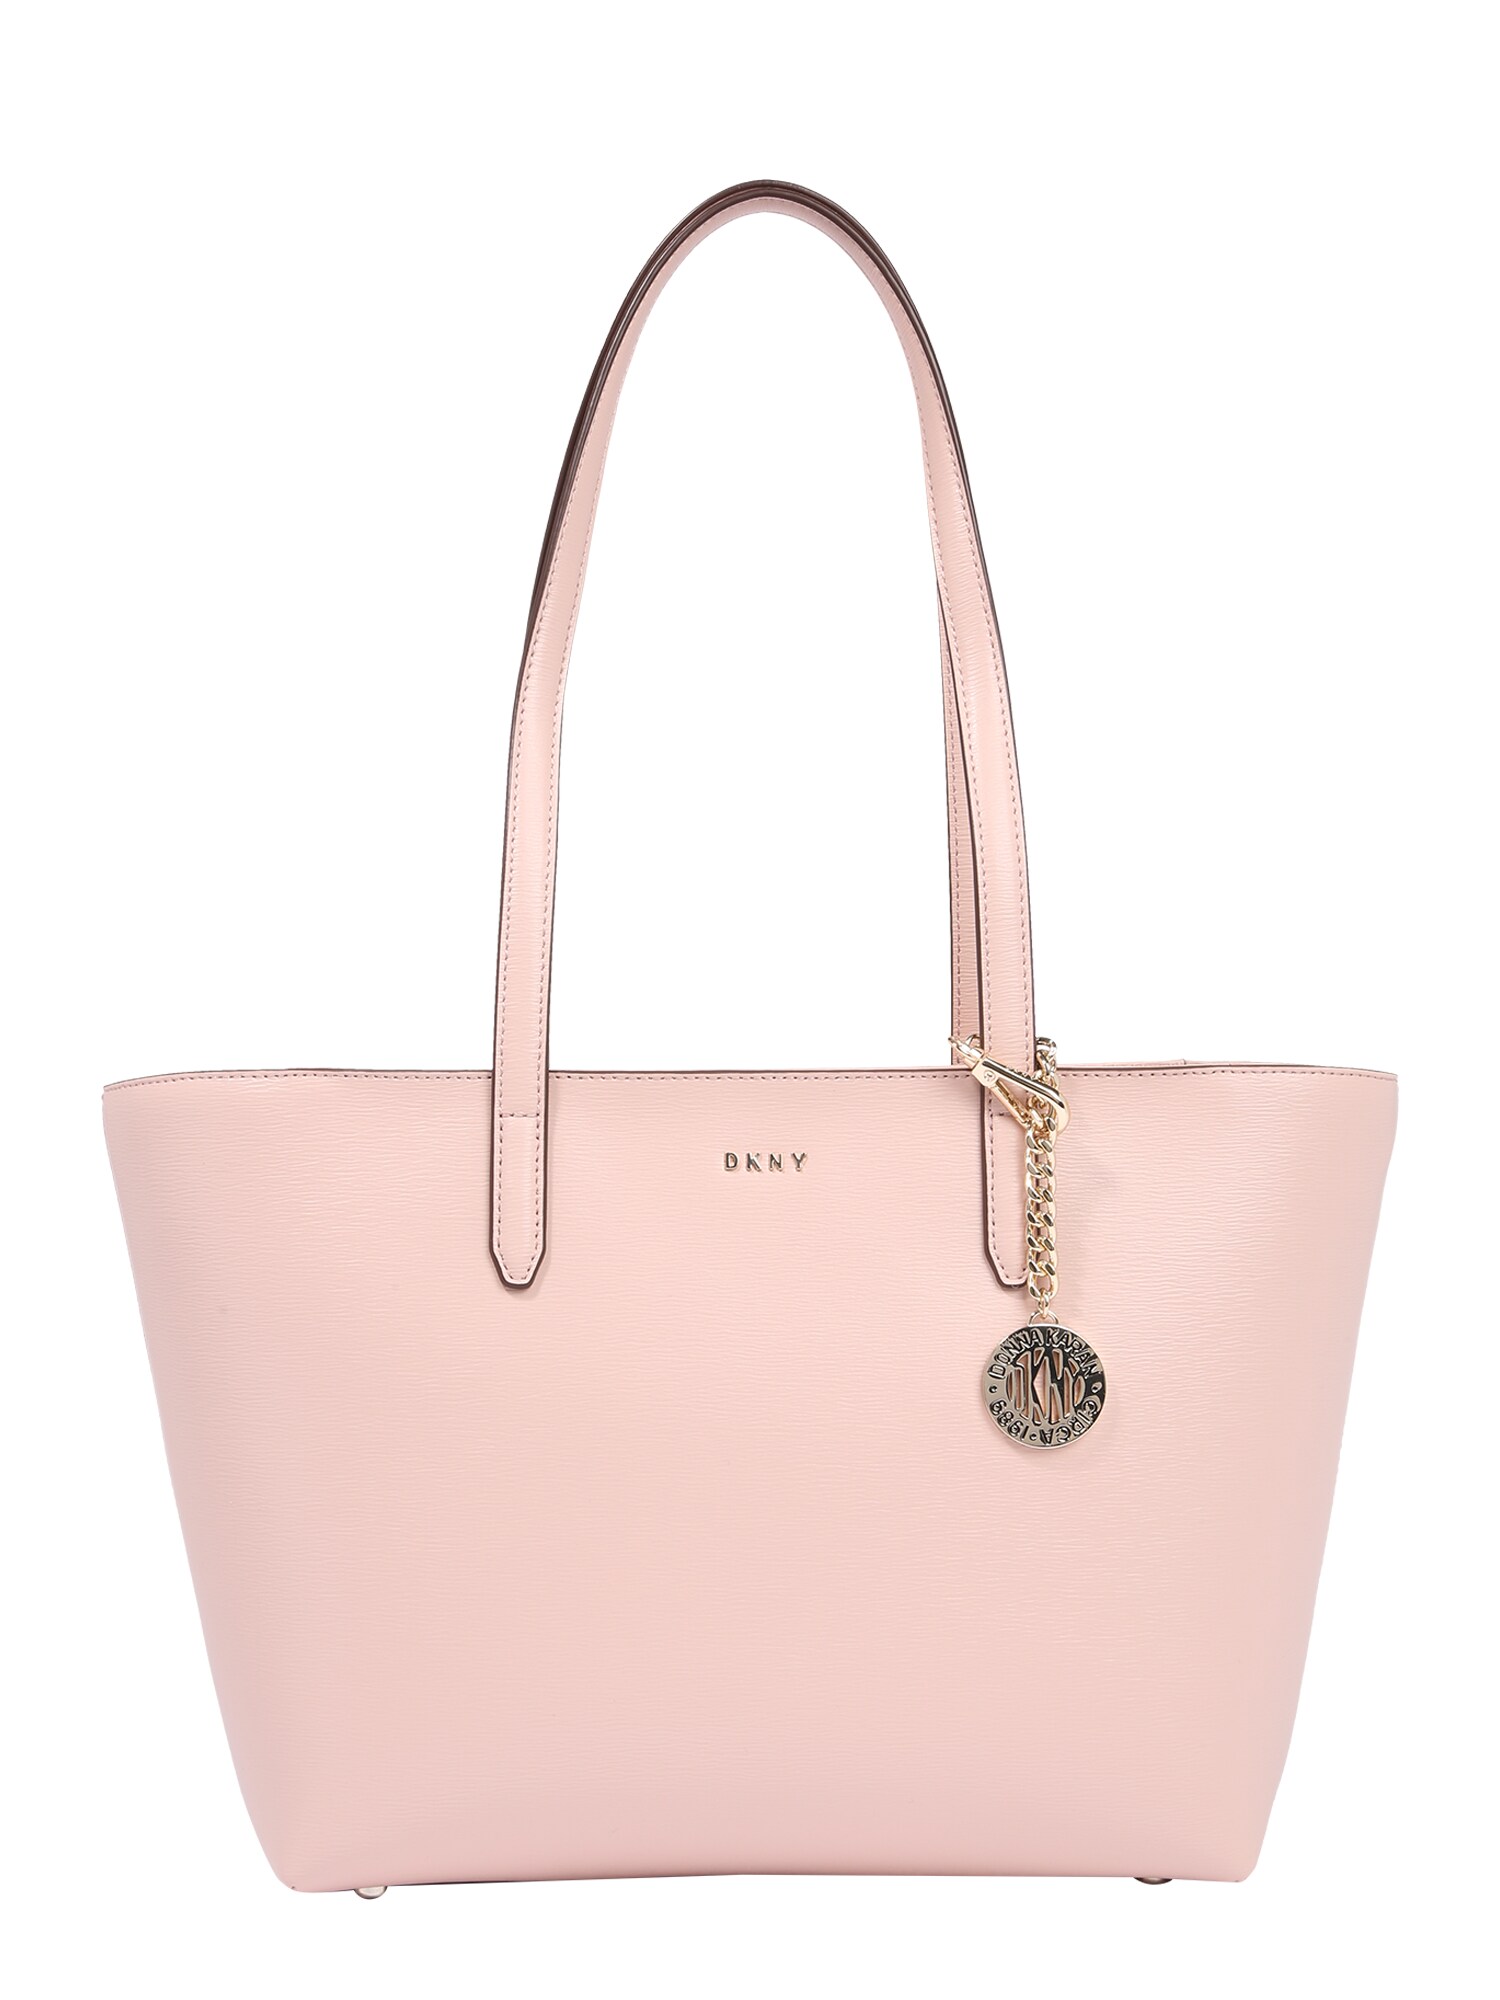 DKNY Pirkinių krepšys 'Bryant'  ryškiai rožinė spalva